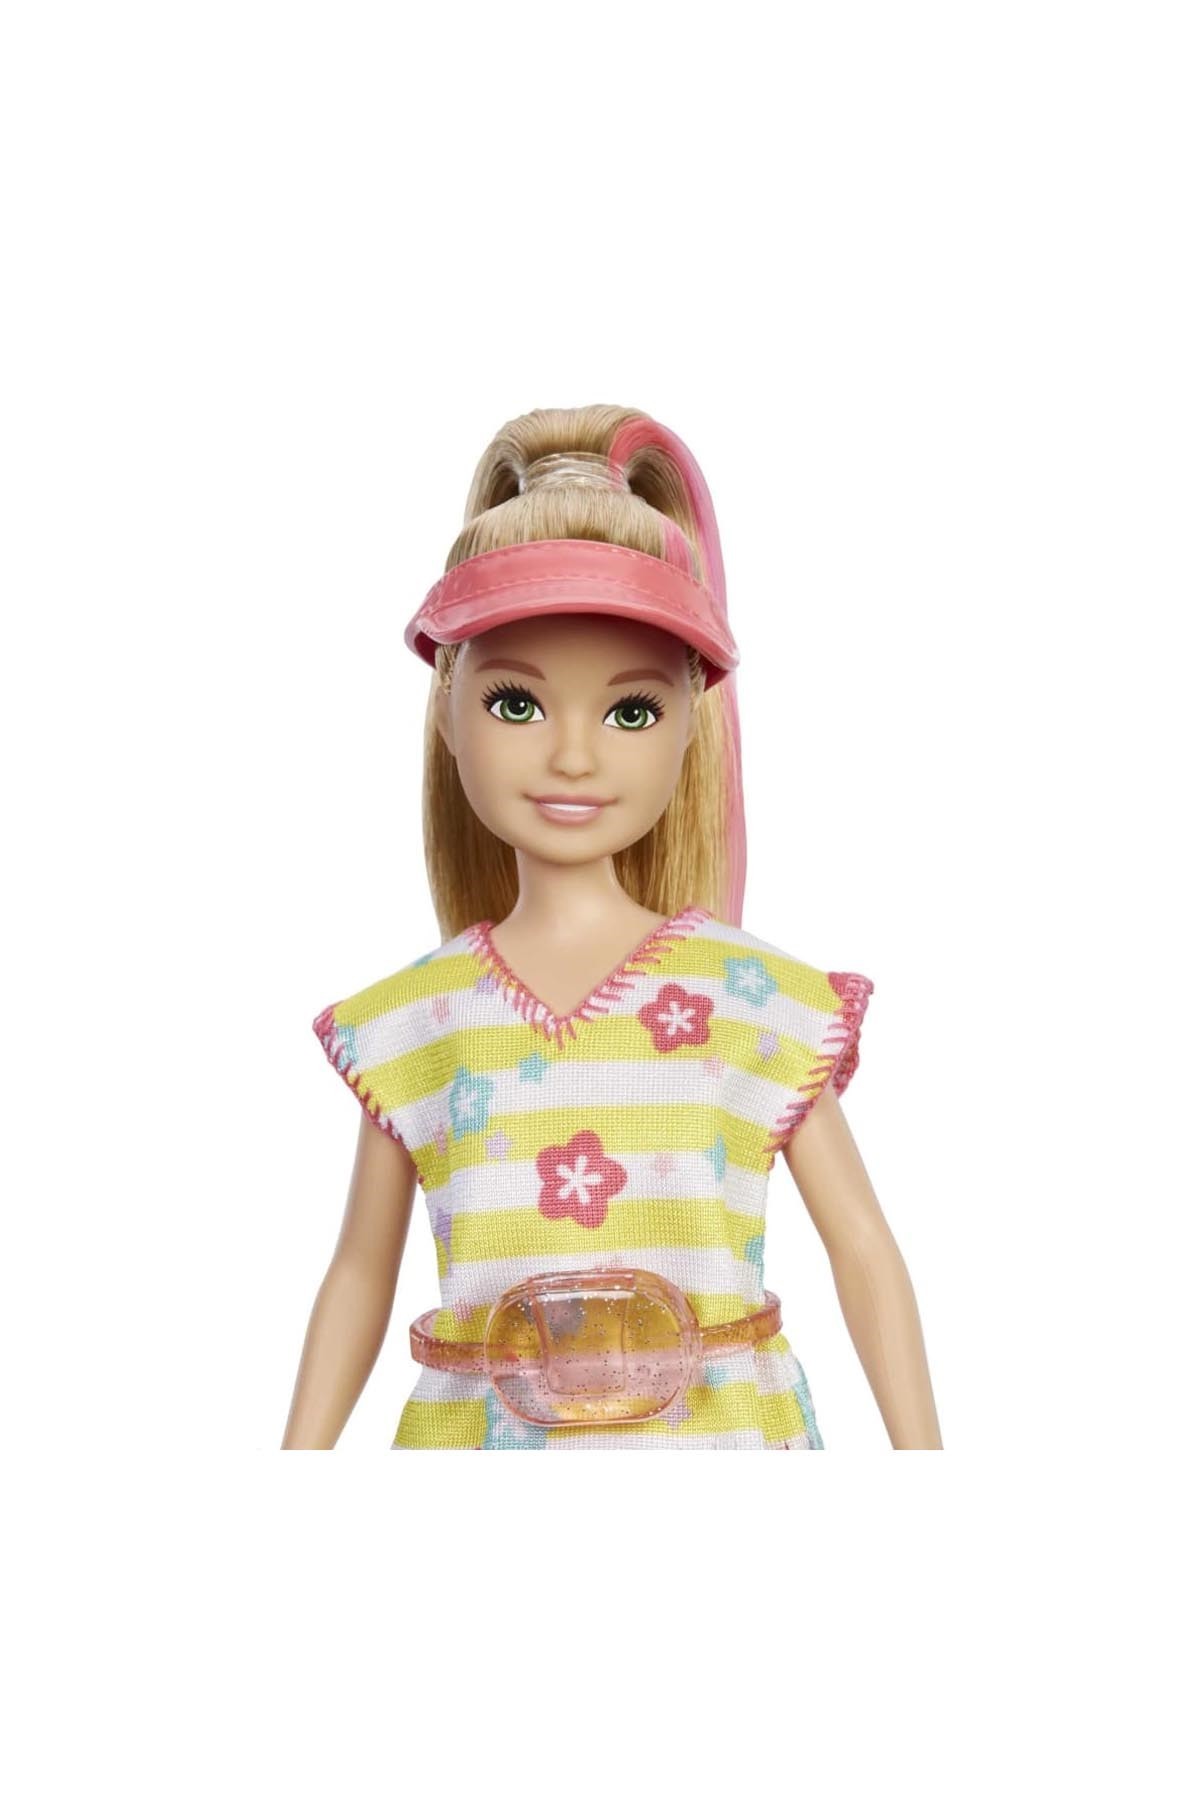 Barbie'nin Kız Kardeşleri Deniz Kızı Oluyor Oyun Setleri